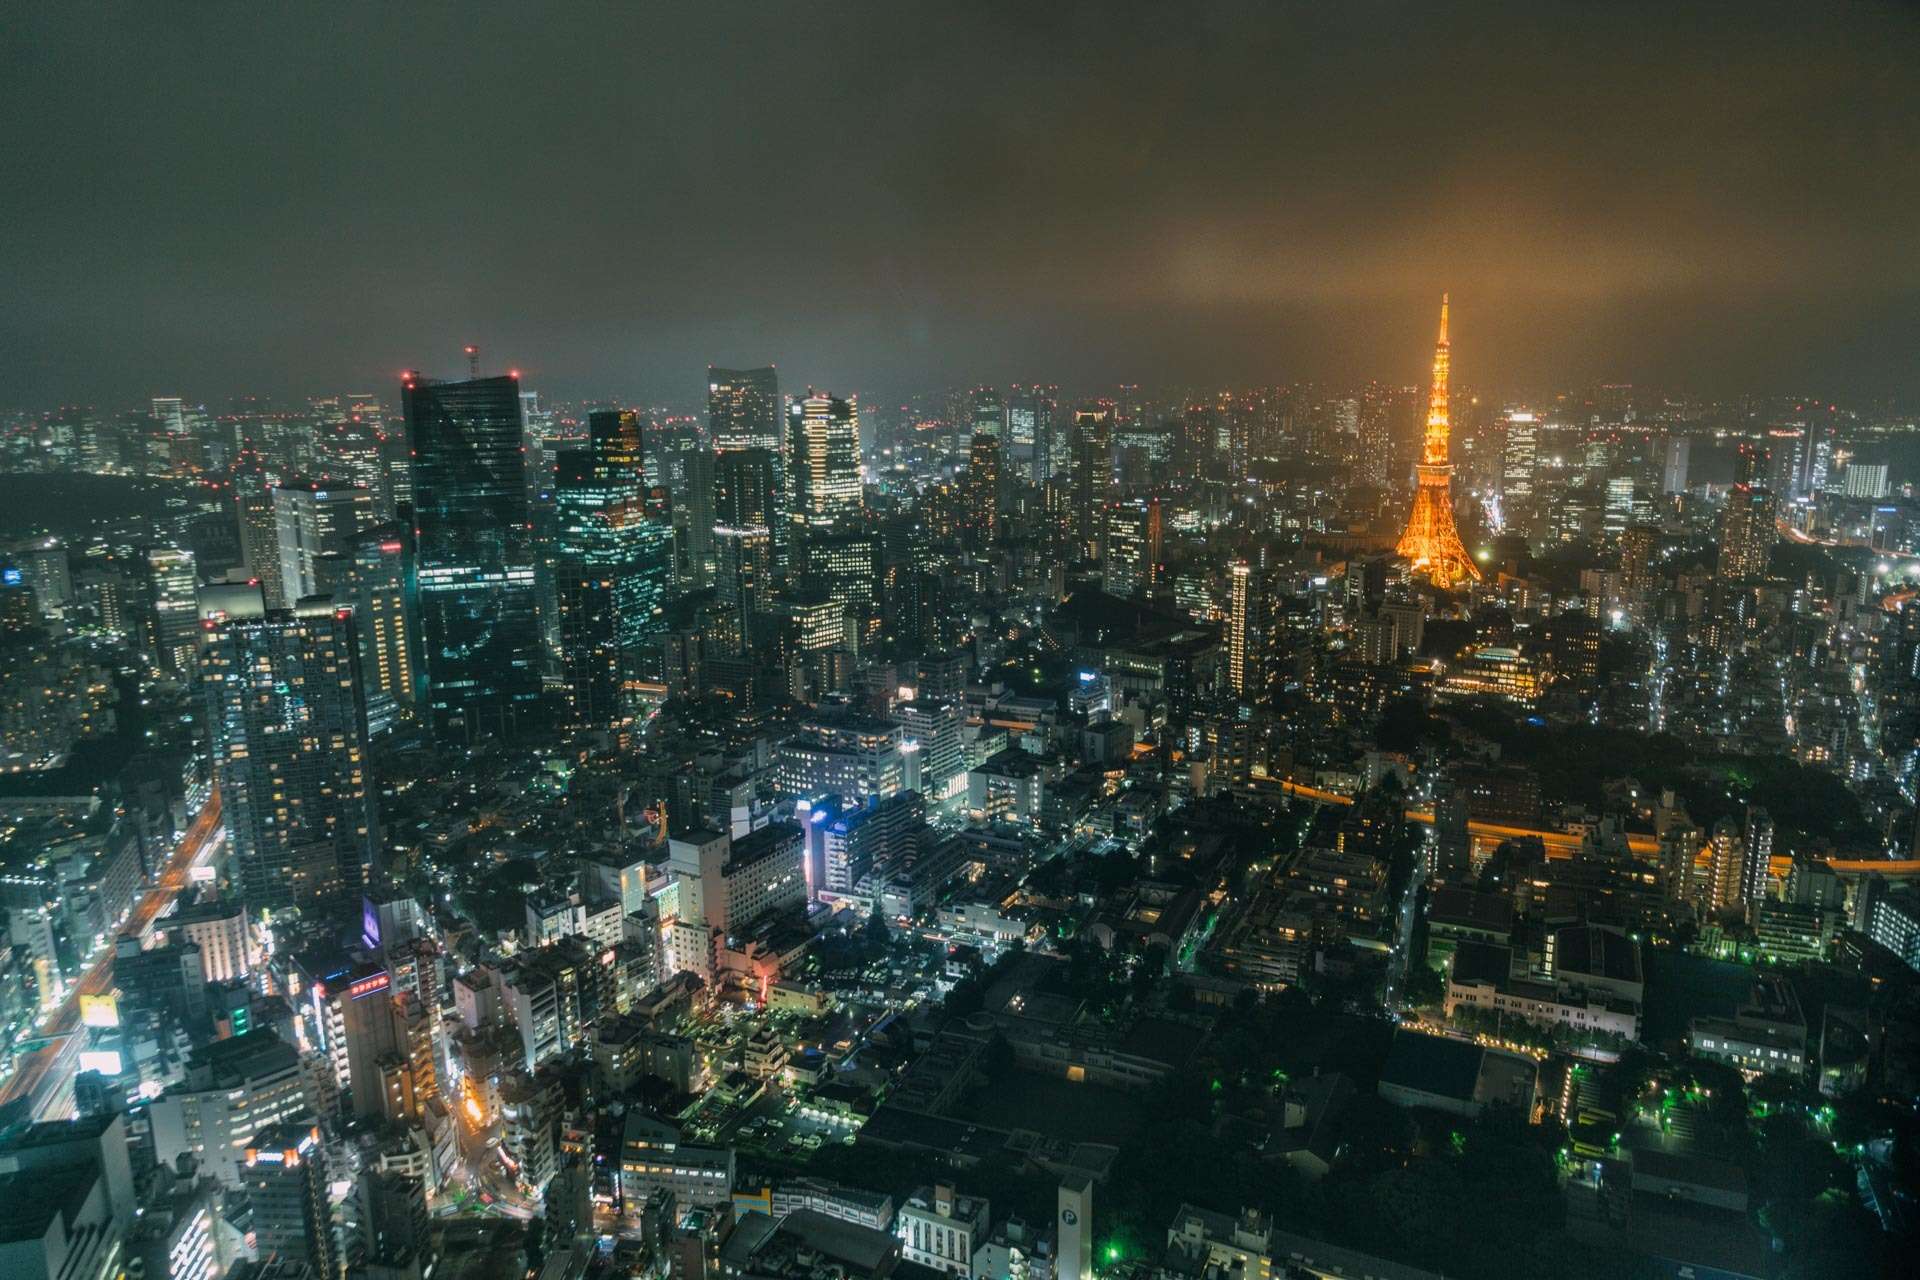 Nattestemning oplyst af Tokyo Tower, som er bygget med inspiration fra Eiffeltårnet (og ca. 10 meter højere).